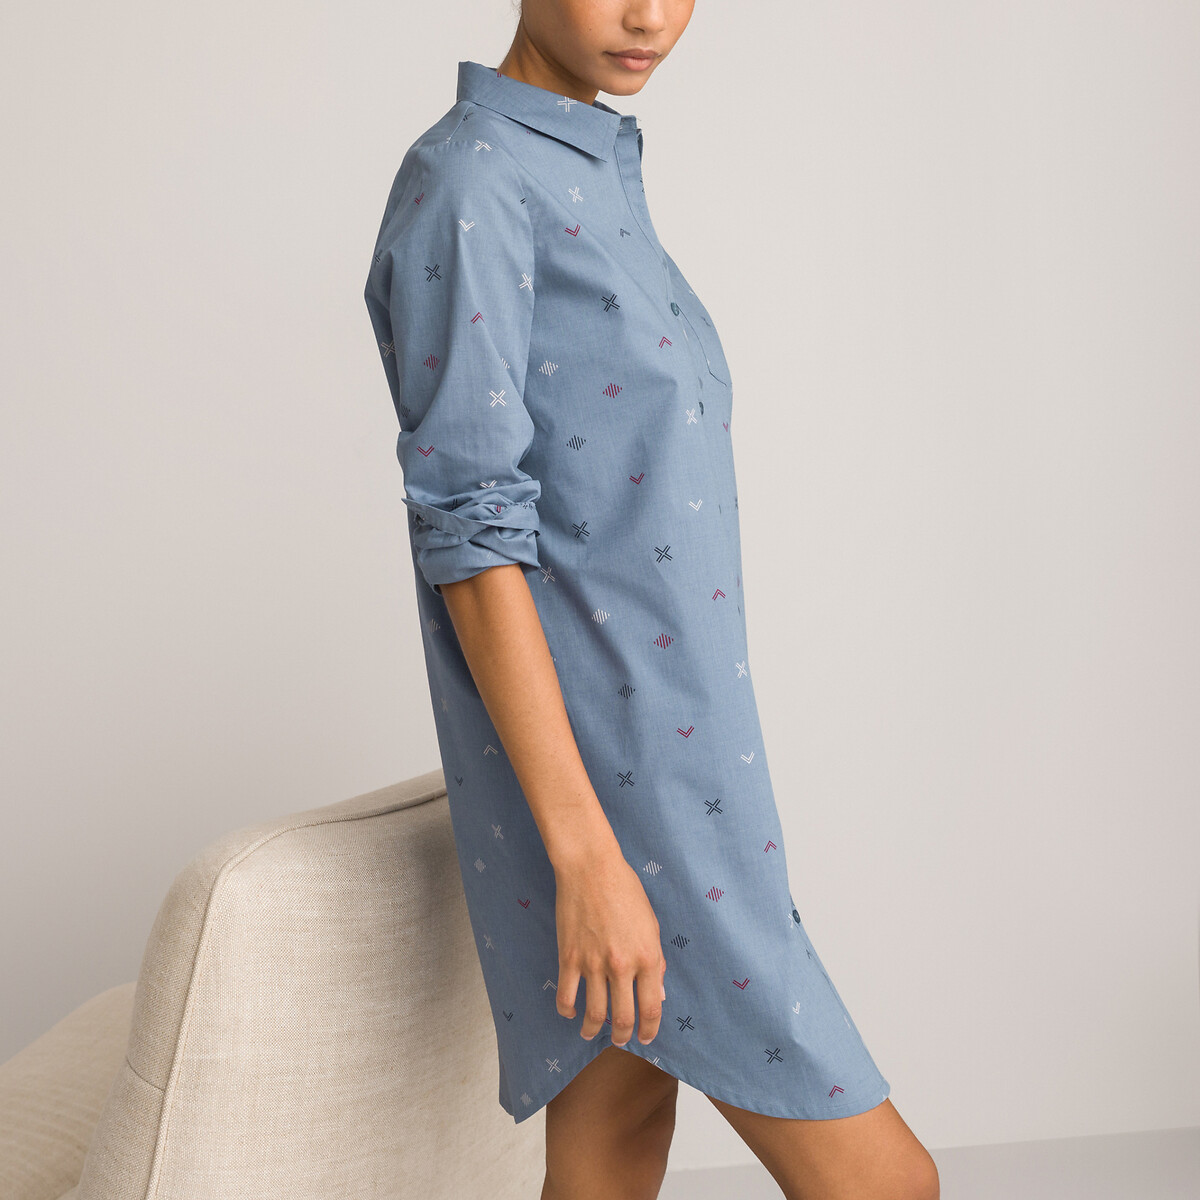 Рубашка Ночная из ткани шамбре с принтом 36 (FR) - 42 (RUS) синий